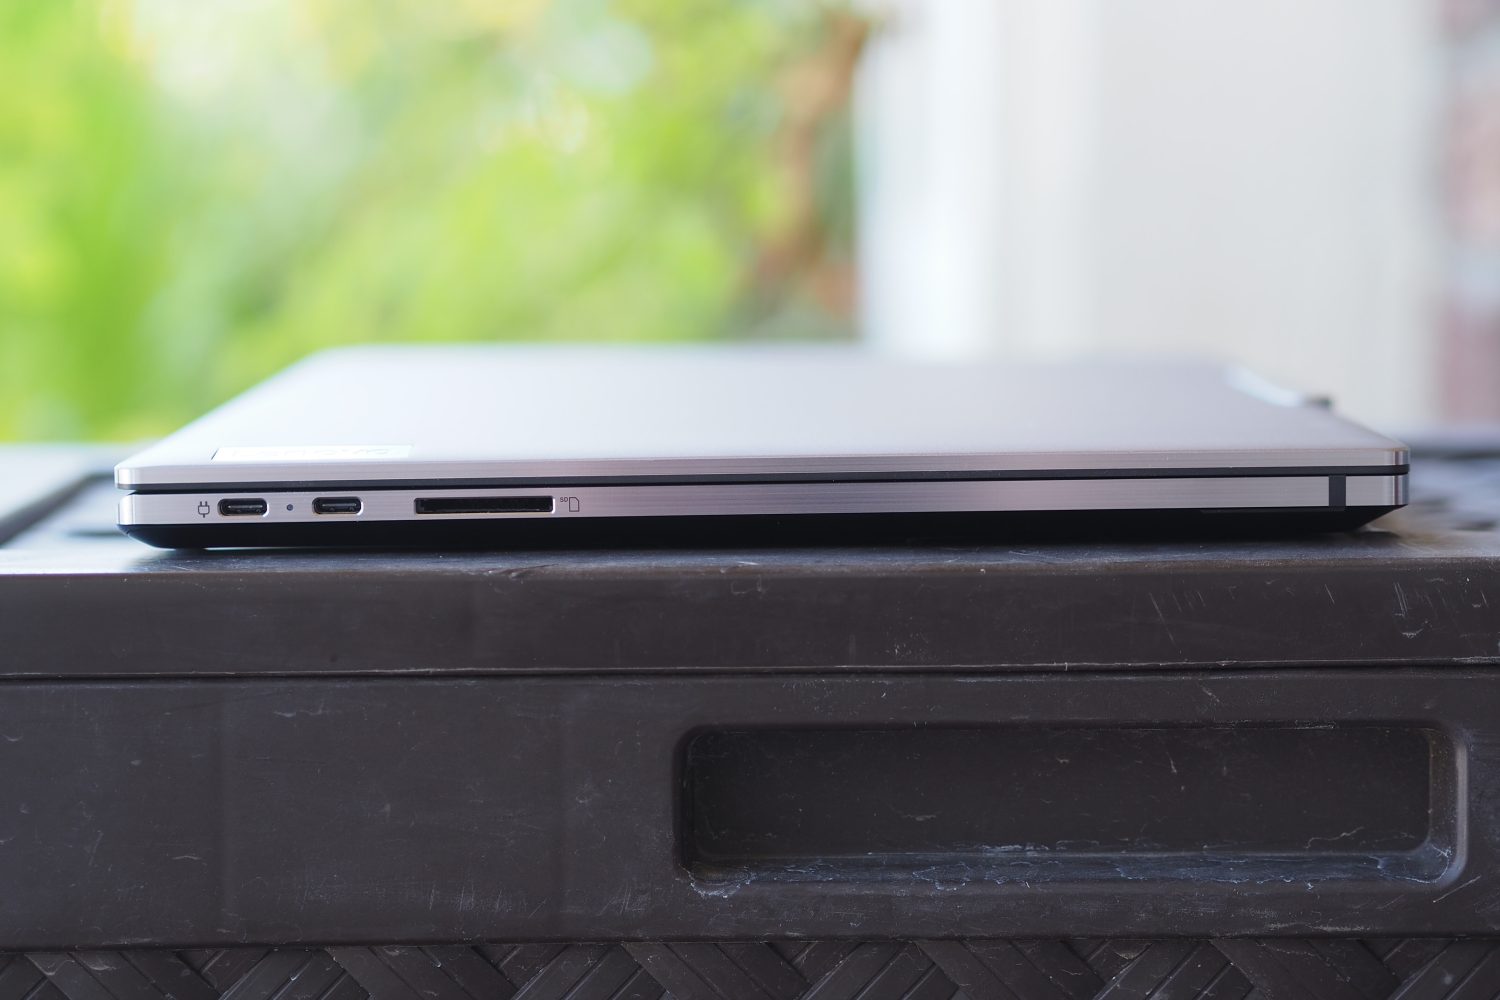 Vista do lado esquerdo do Lenovo ThinkPad Z16 mostrando as portas.